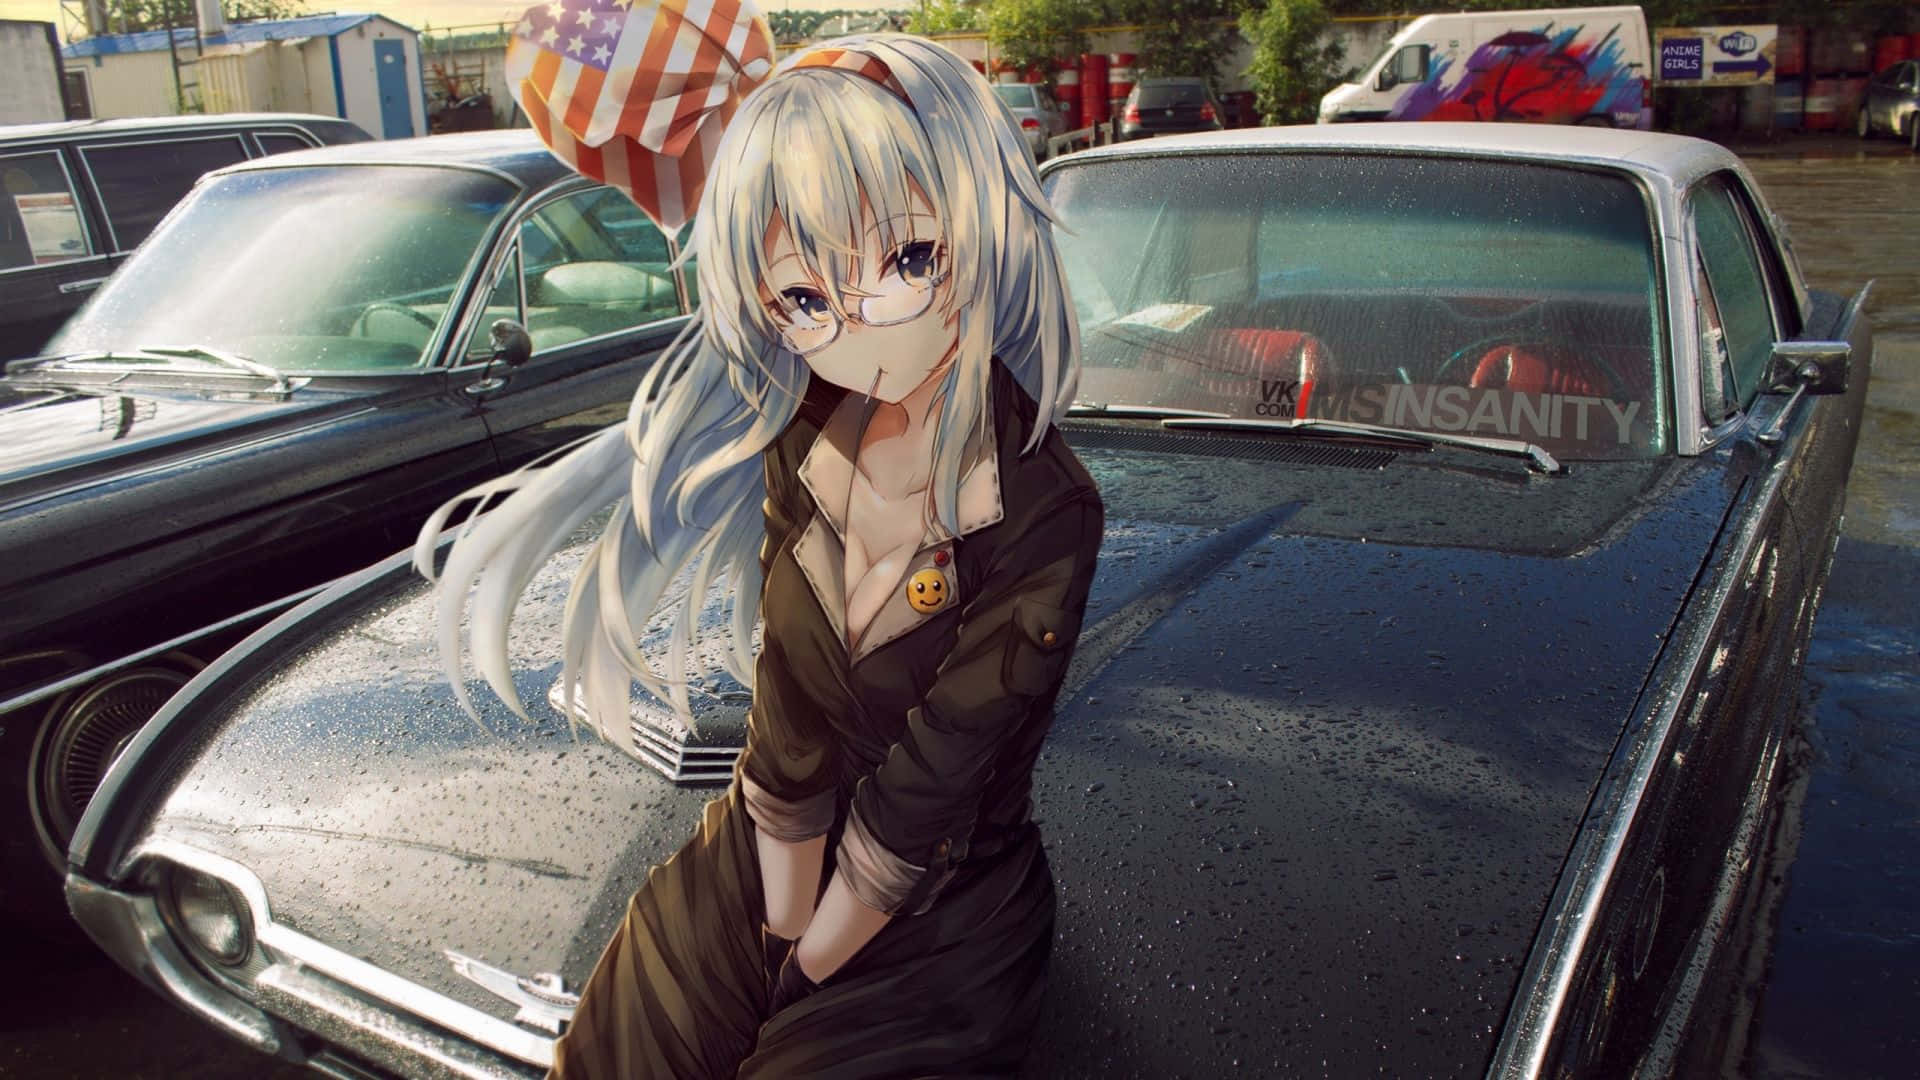 Zeigensie Ihren Stil Mit Diesem Von Anime Inspirierten Auto.